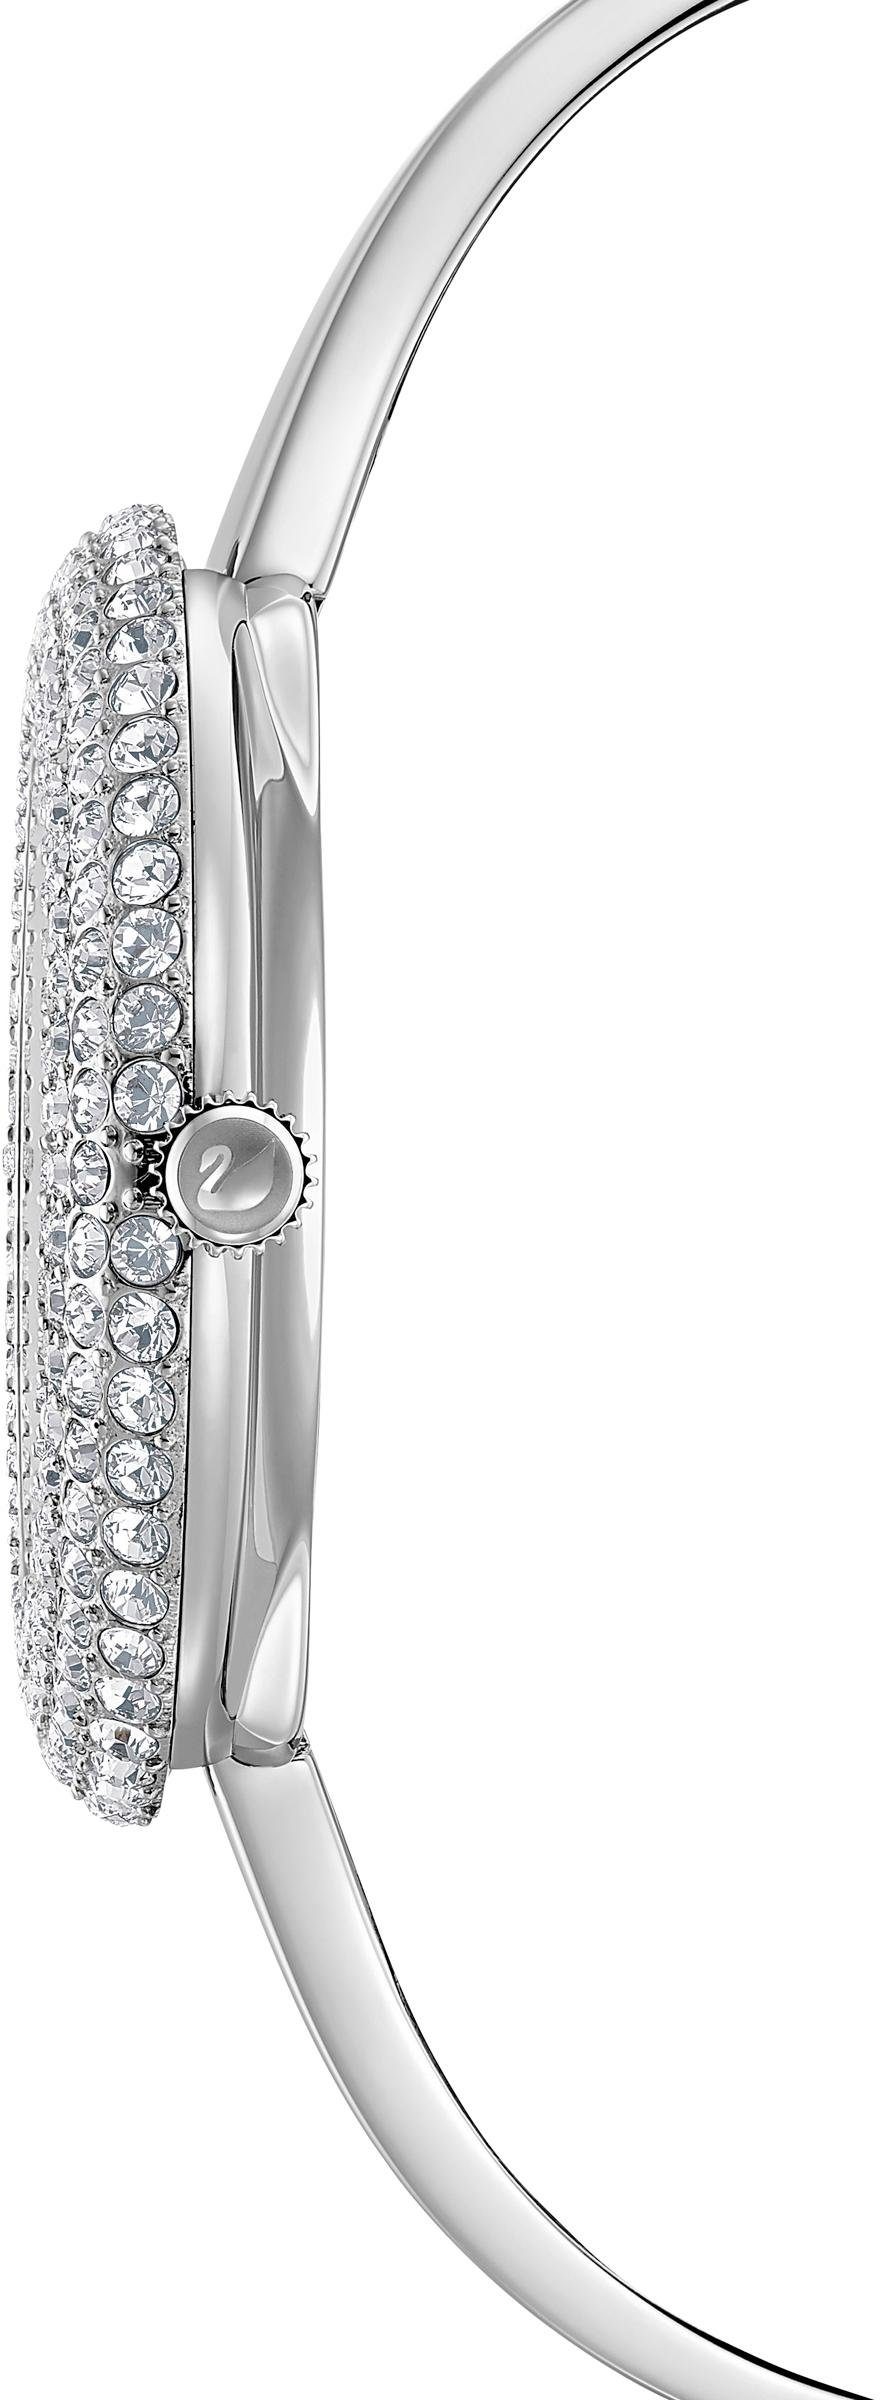 Swarovski Schweizer Uhr silber 5483853 ROSE, CRYSTAL